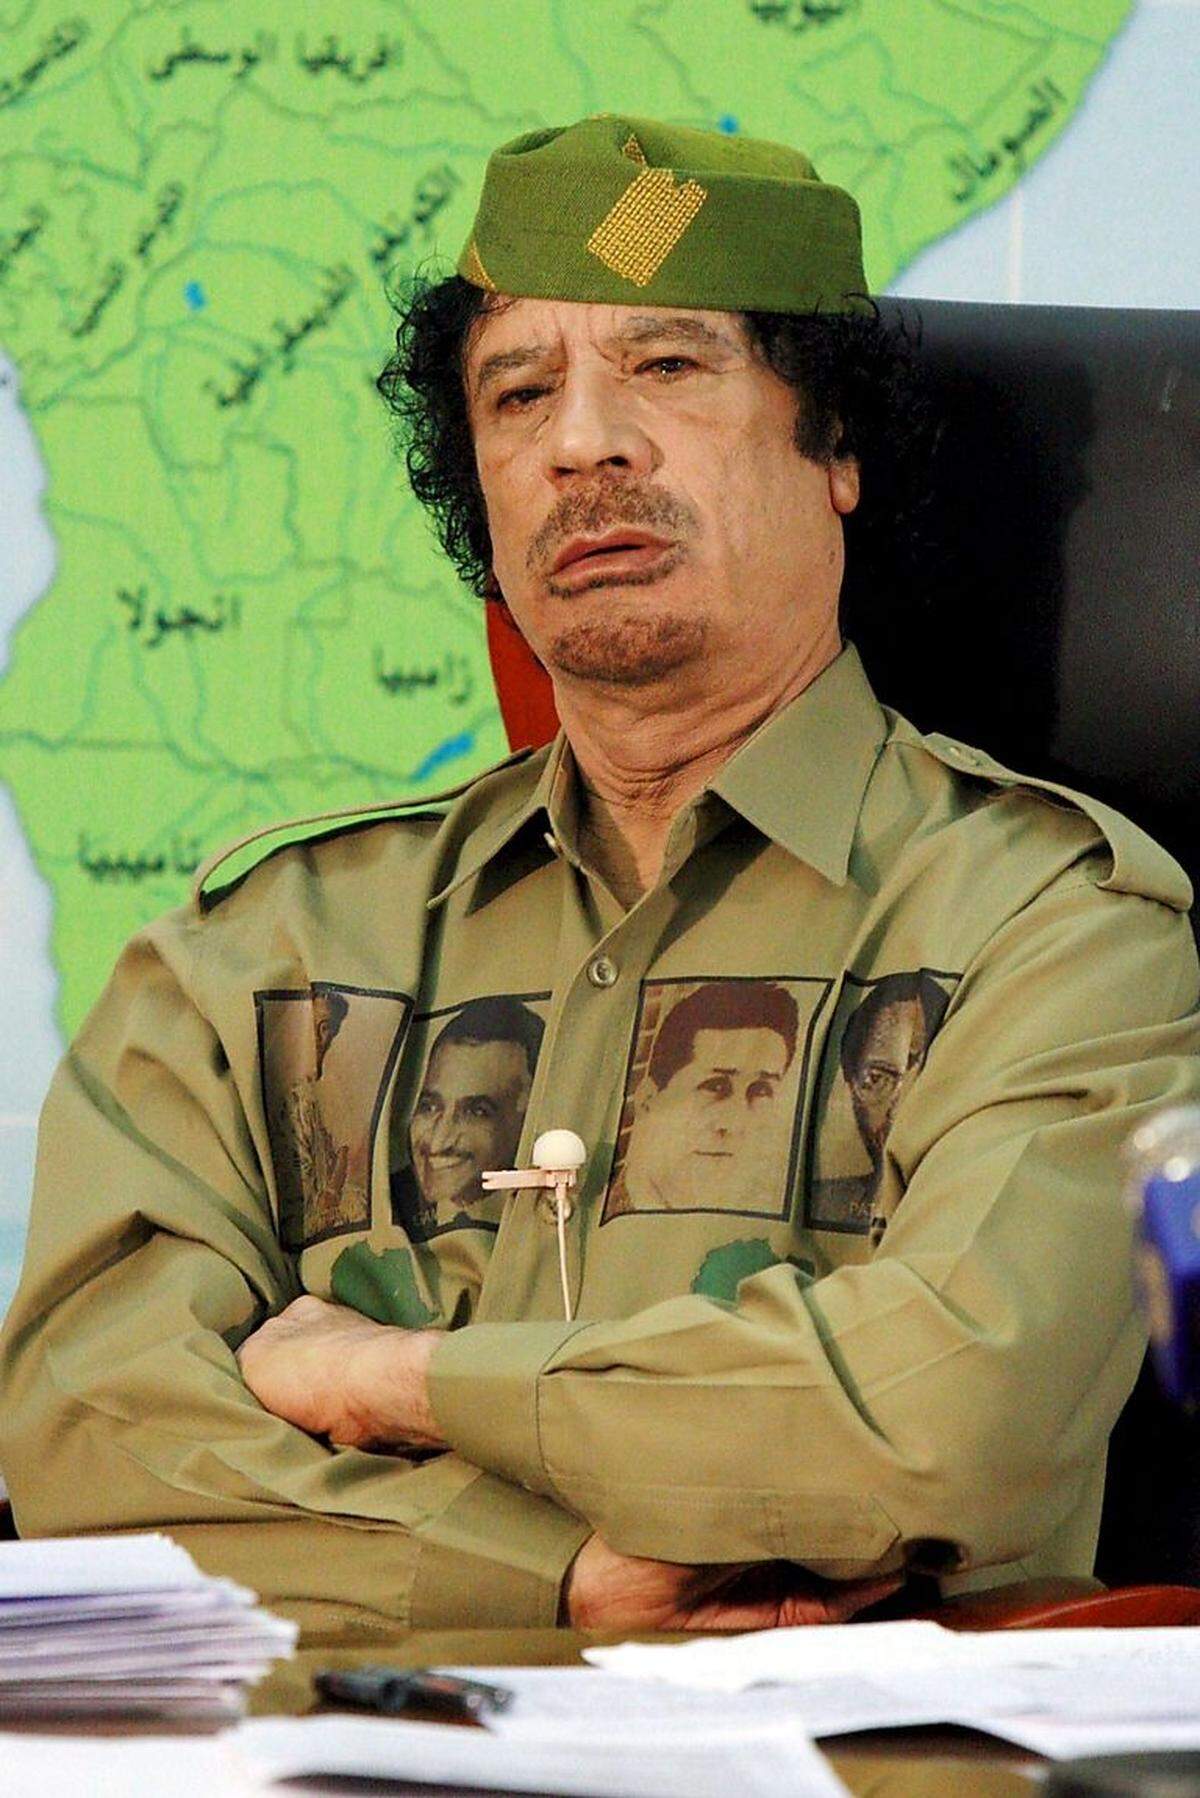 Der Machthaber herrschte fast 42 Jahre lang in Libyen und wurde 2011 mit 69 Jahren nach der Gefangennahme in seiner Heimatstadt Sirte erschossen.